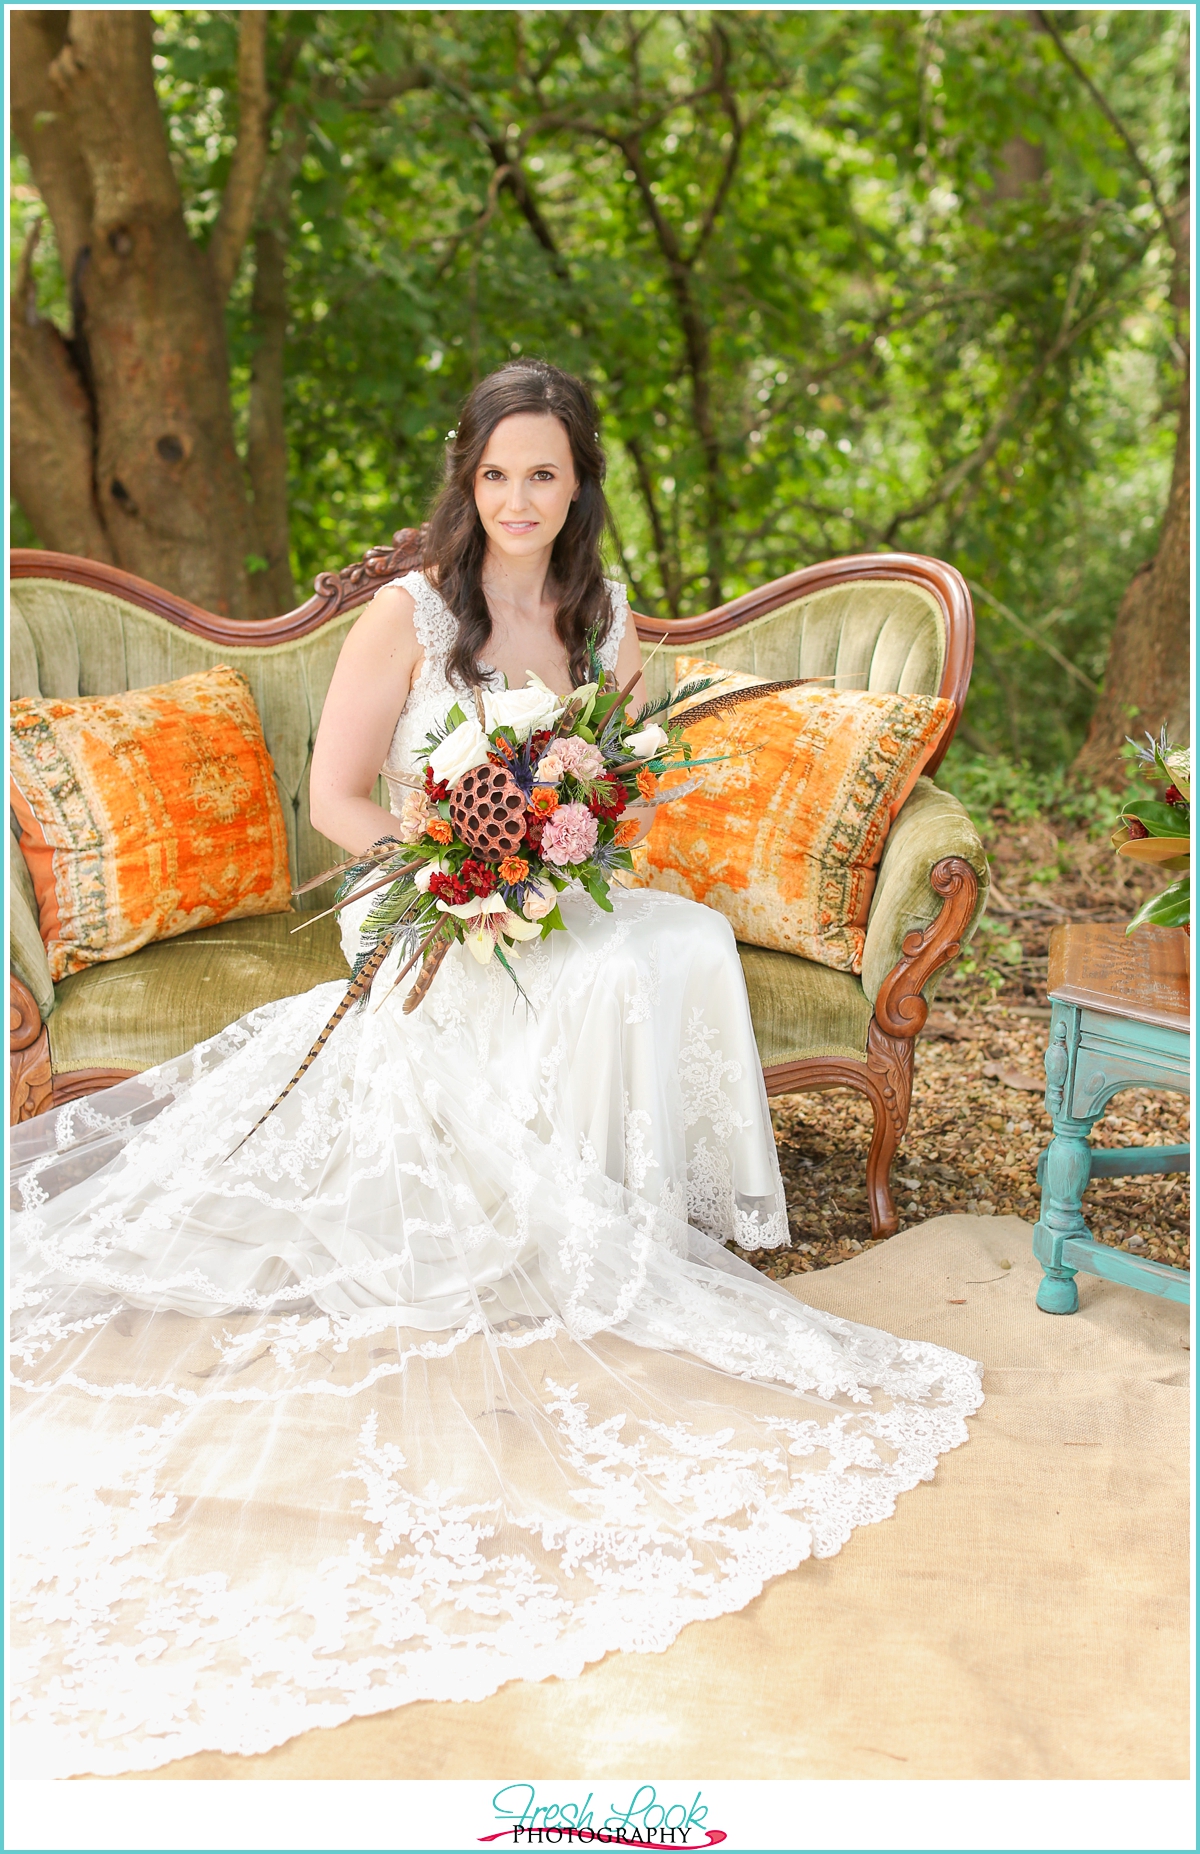 fierce bride in lace wedding dress